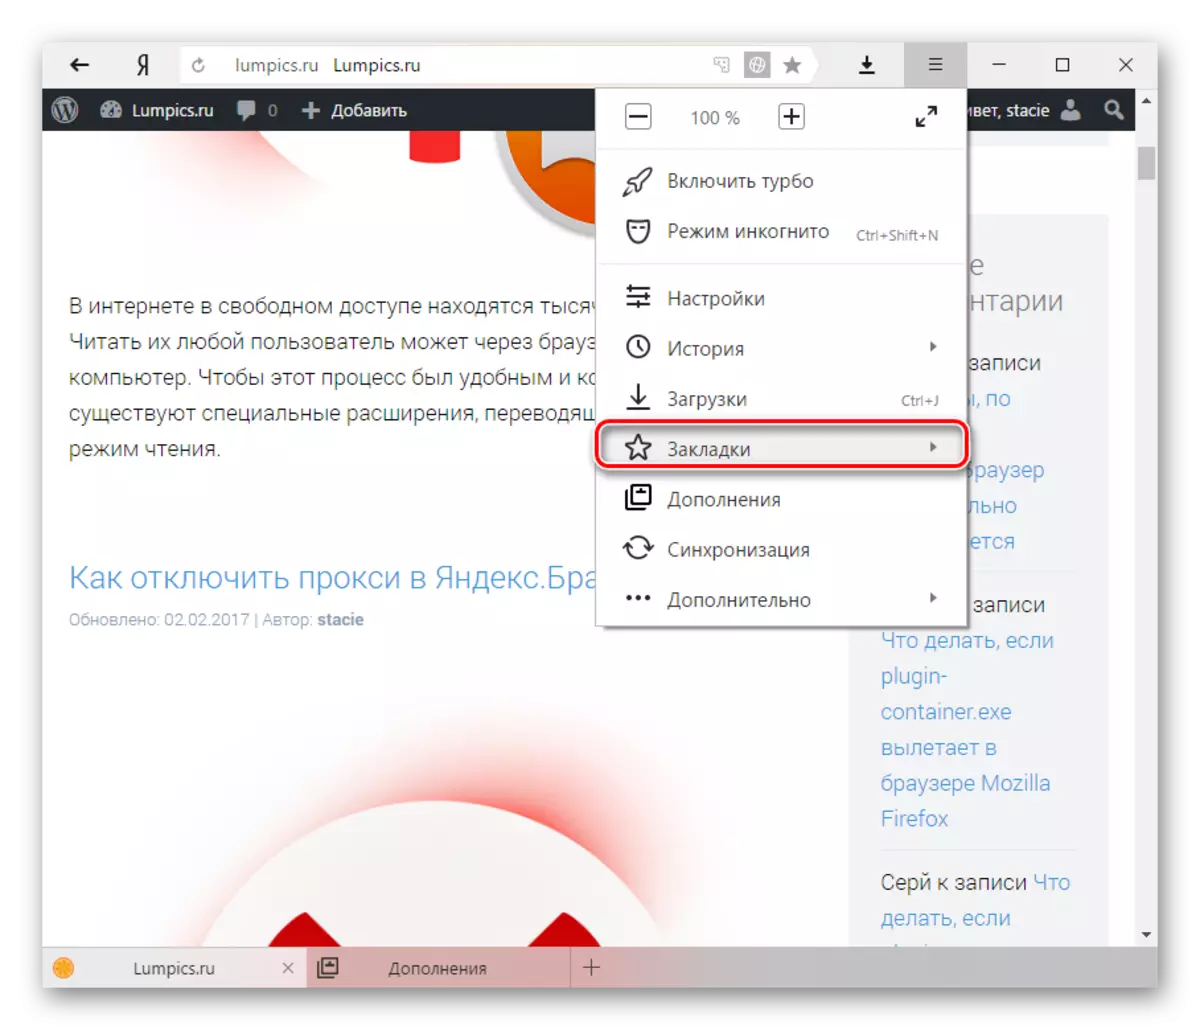 Boekmerke in Yandex.Browser